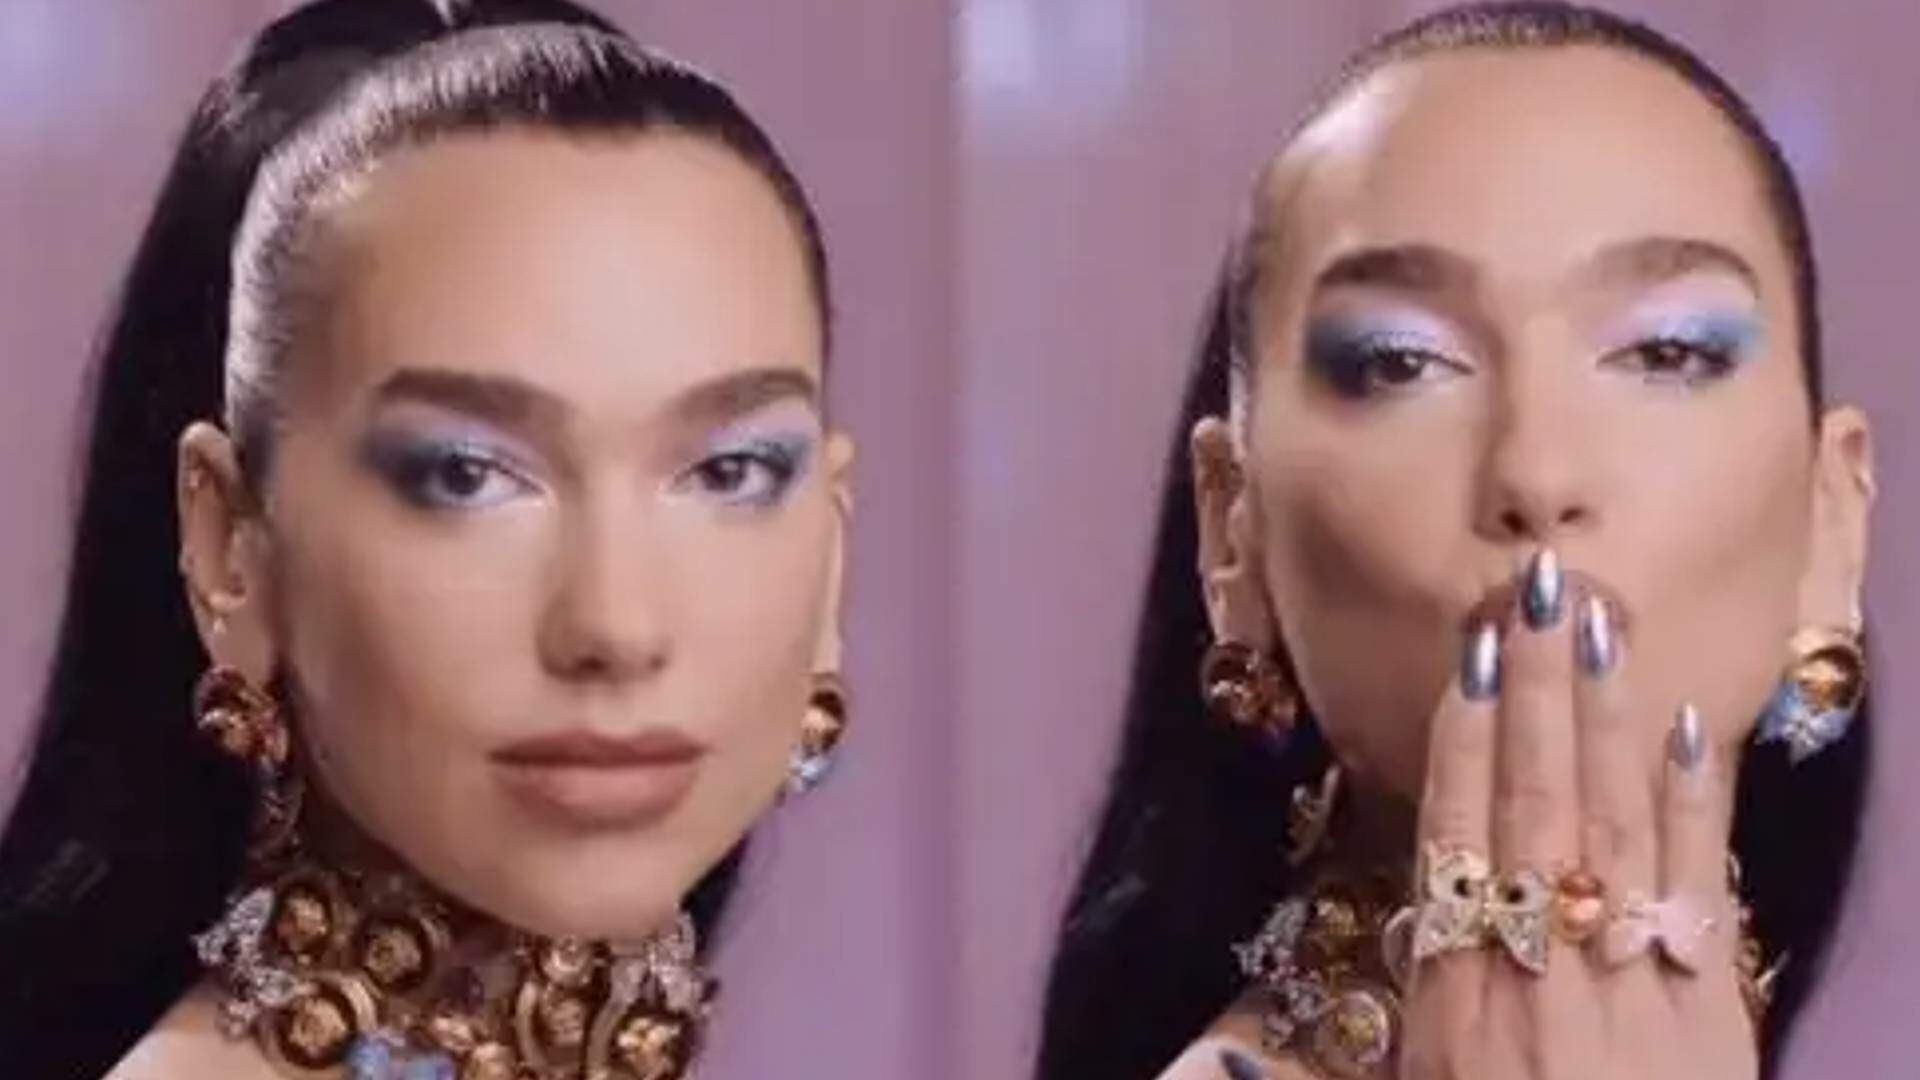 Toda Barbiezinha, Dua Lipa protagoniza versão da boneca no clipe dançante do hit “Dance The Night” - Metropolitana FM